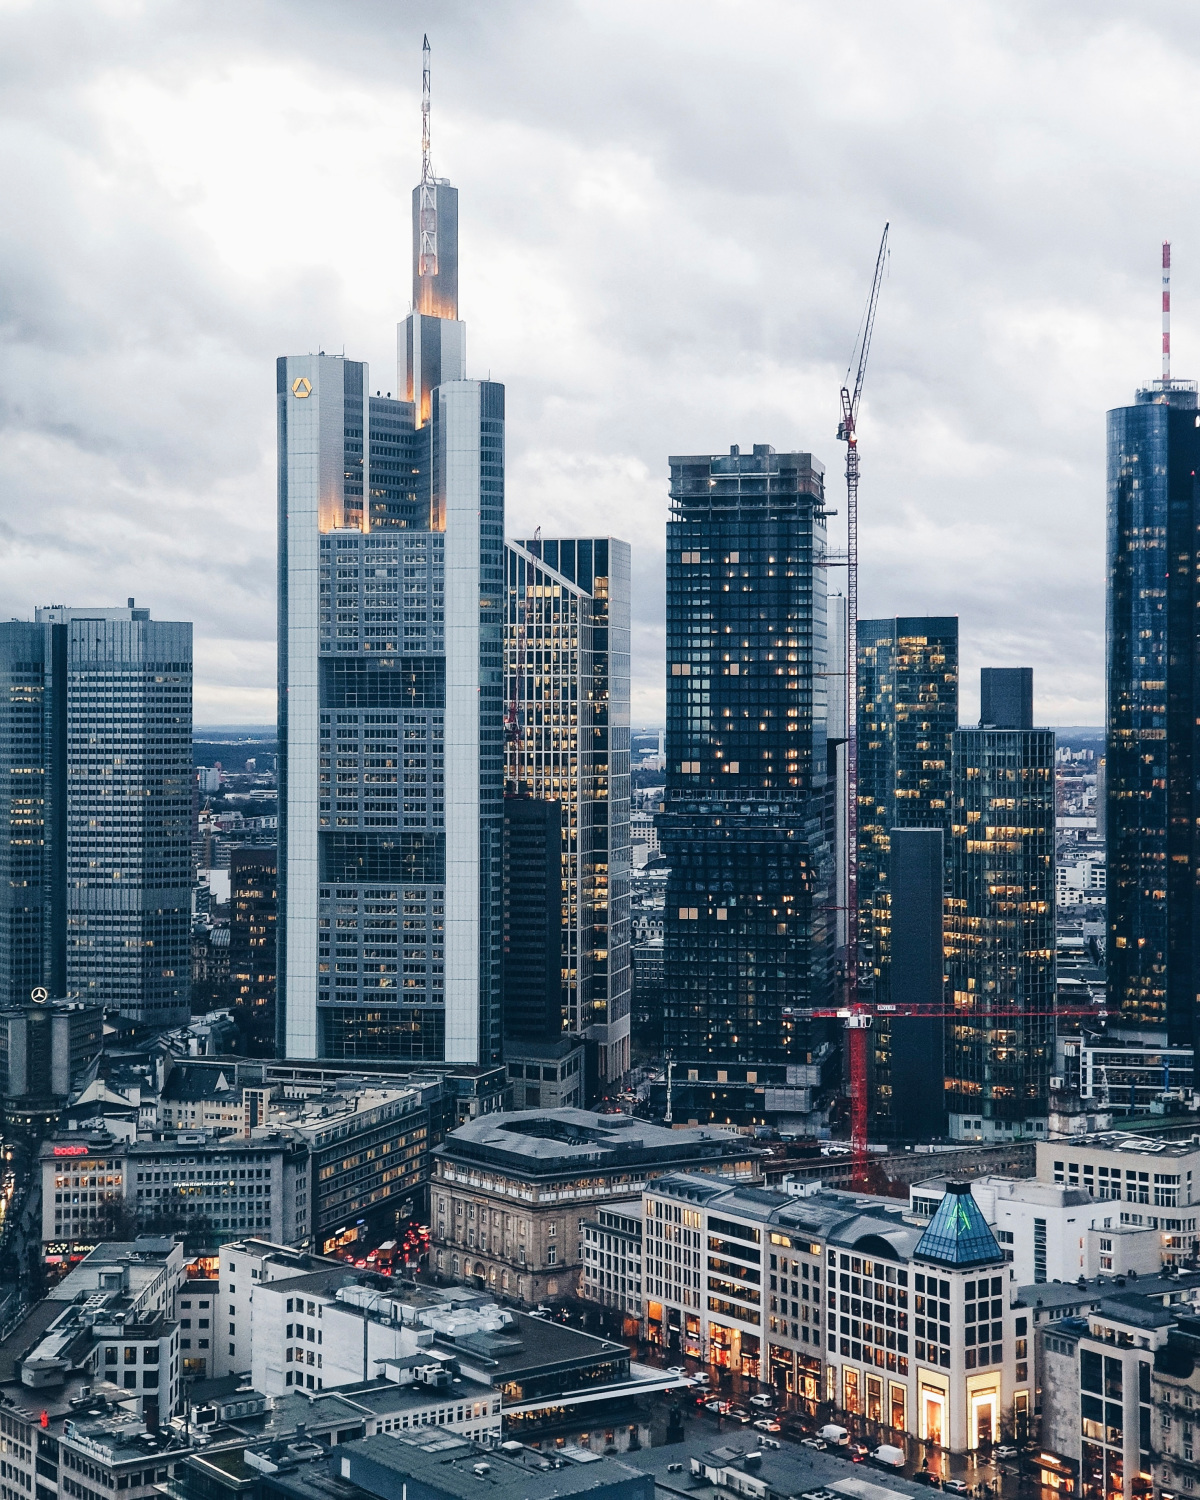 Steigleitungen sollen vertikale Bauwerke wie die Frankfurter Bankentürme zuverlässig mit Strom, Wasser und Gas bis in die höchsten Stockwerke versorgen.